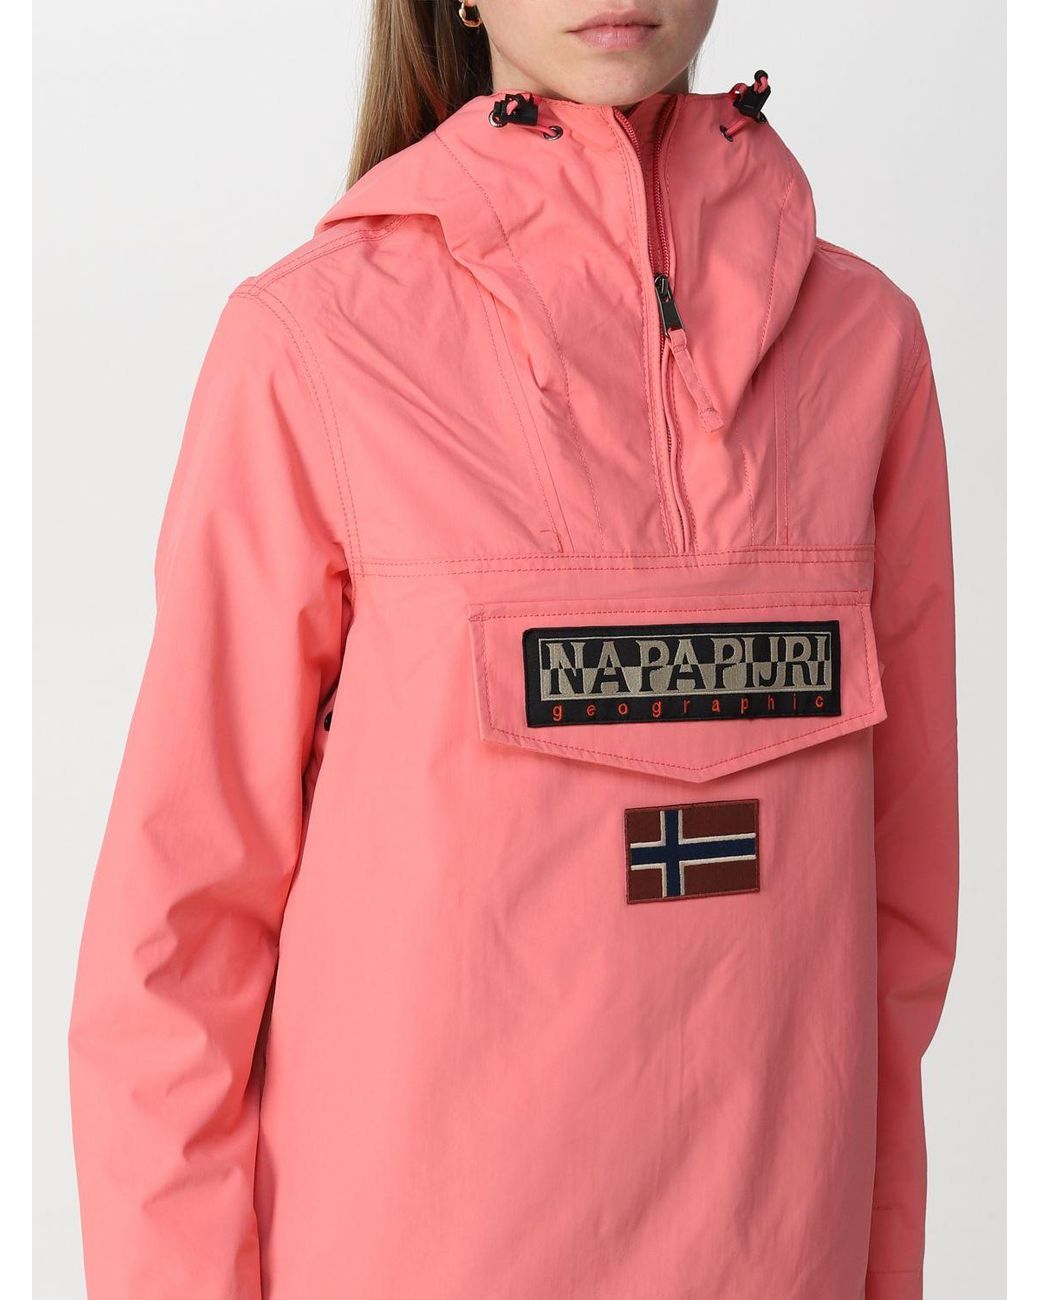 Napapijri Jacket in Pink | Lyst